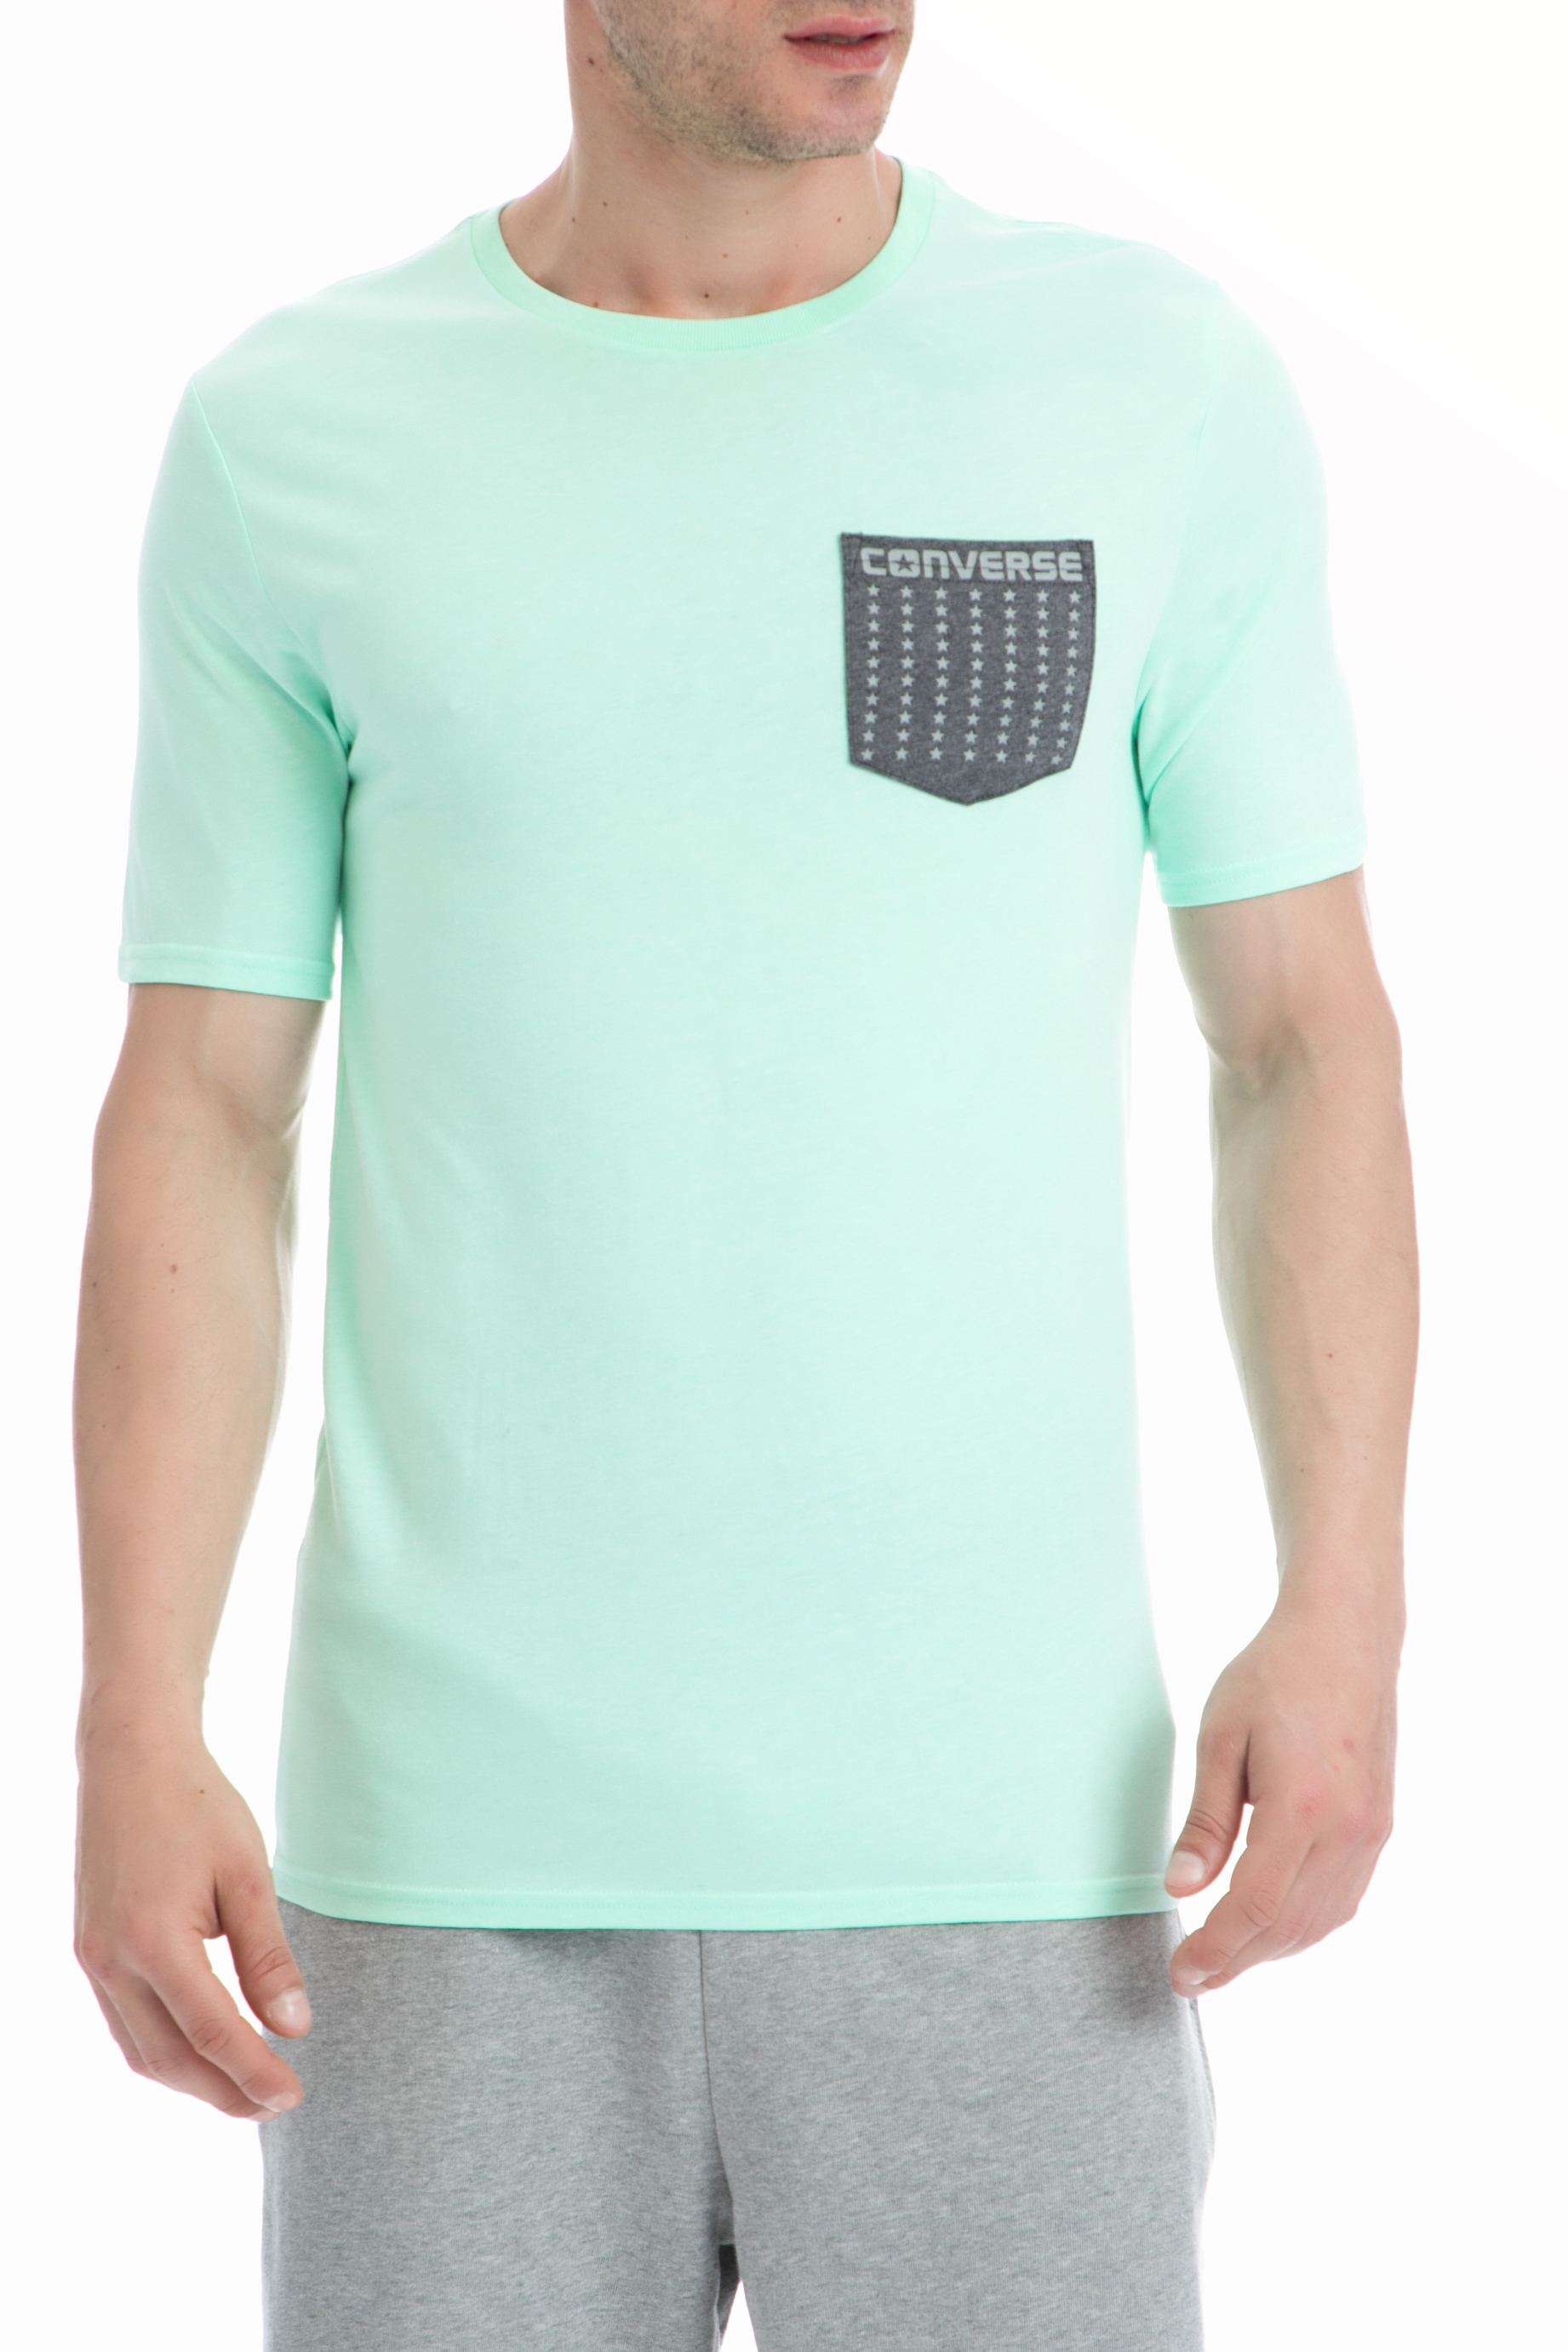 Ανδρικά/Ρούχα/Αθλητικά/T-shirt CONVERSE - Ανδρική μπλούζα Converse πράσινη